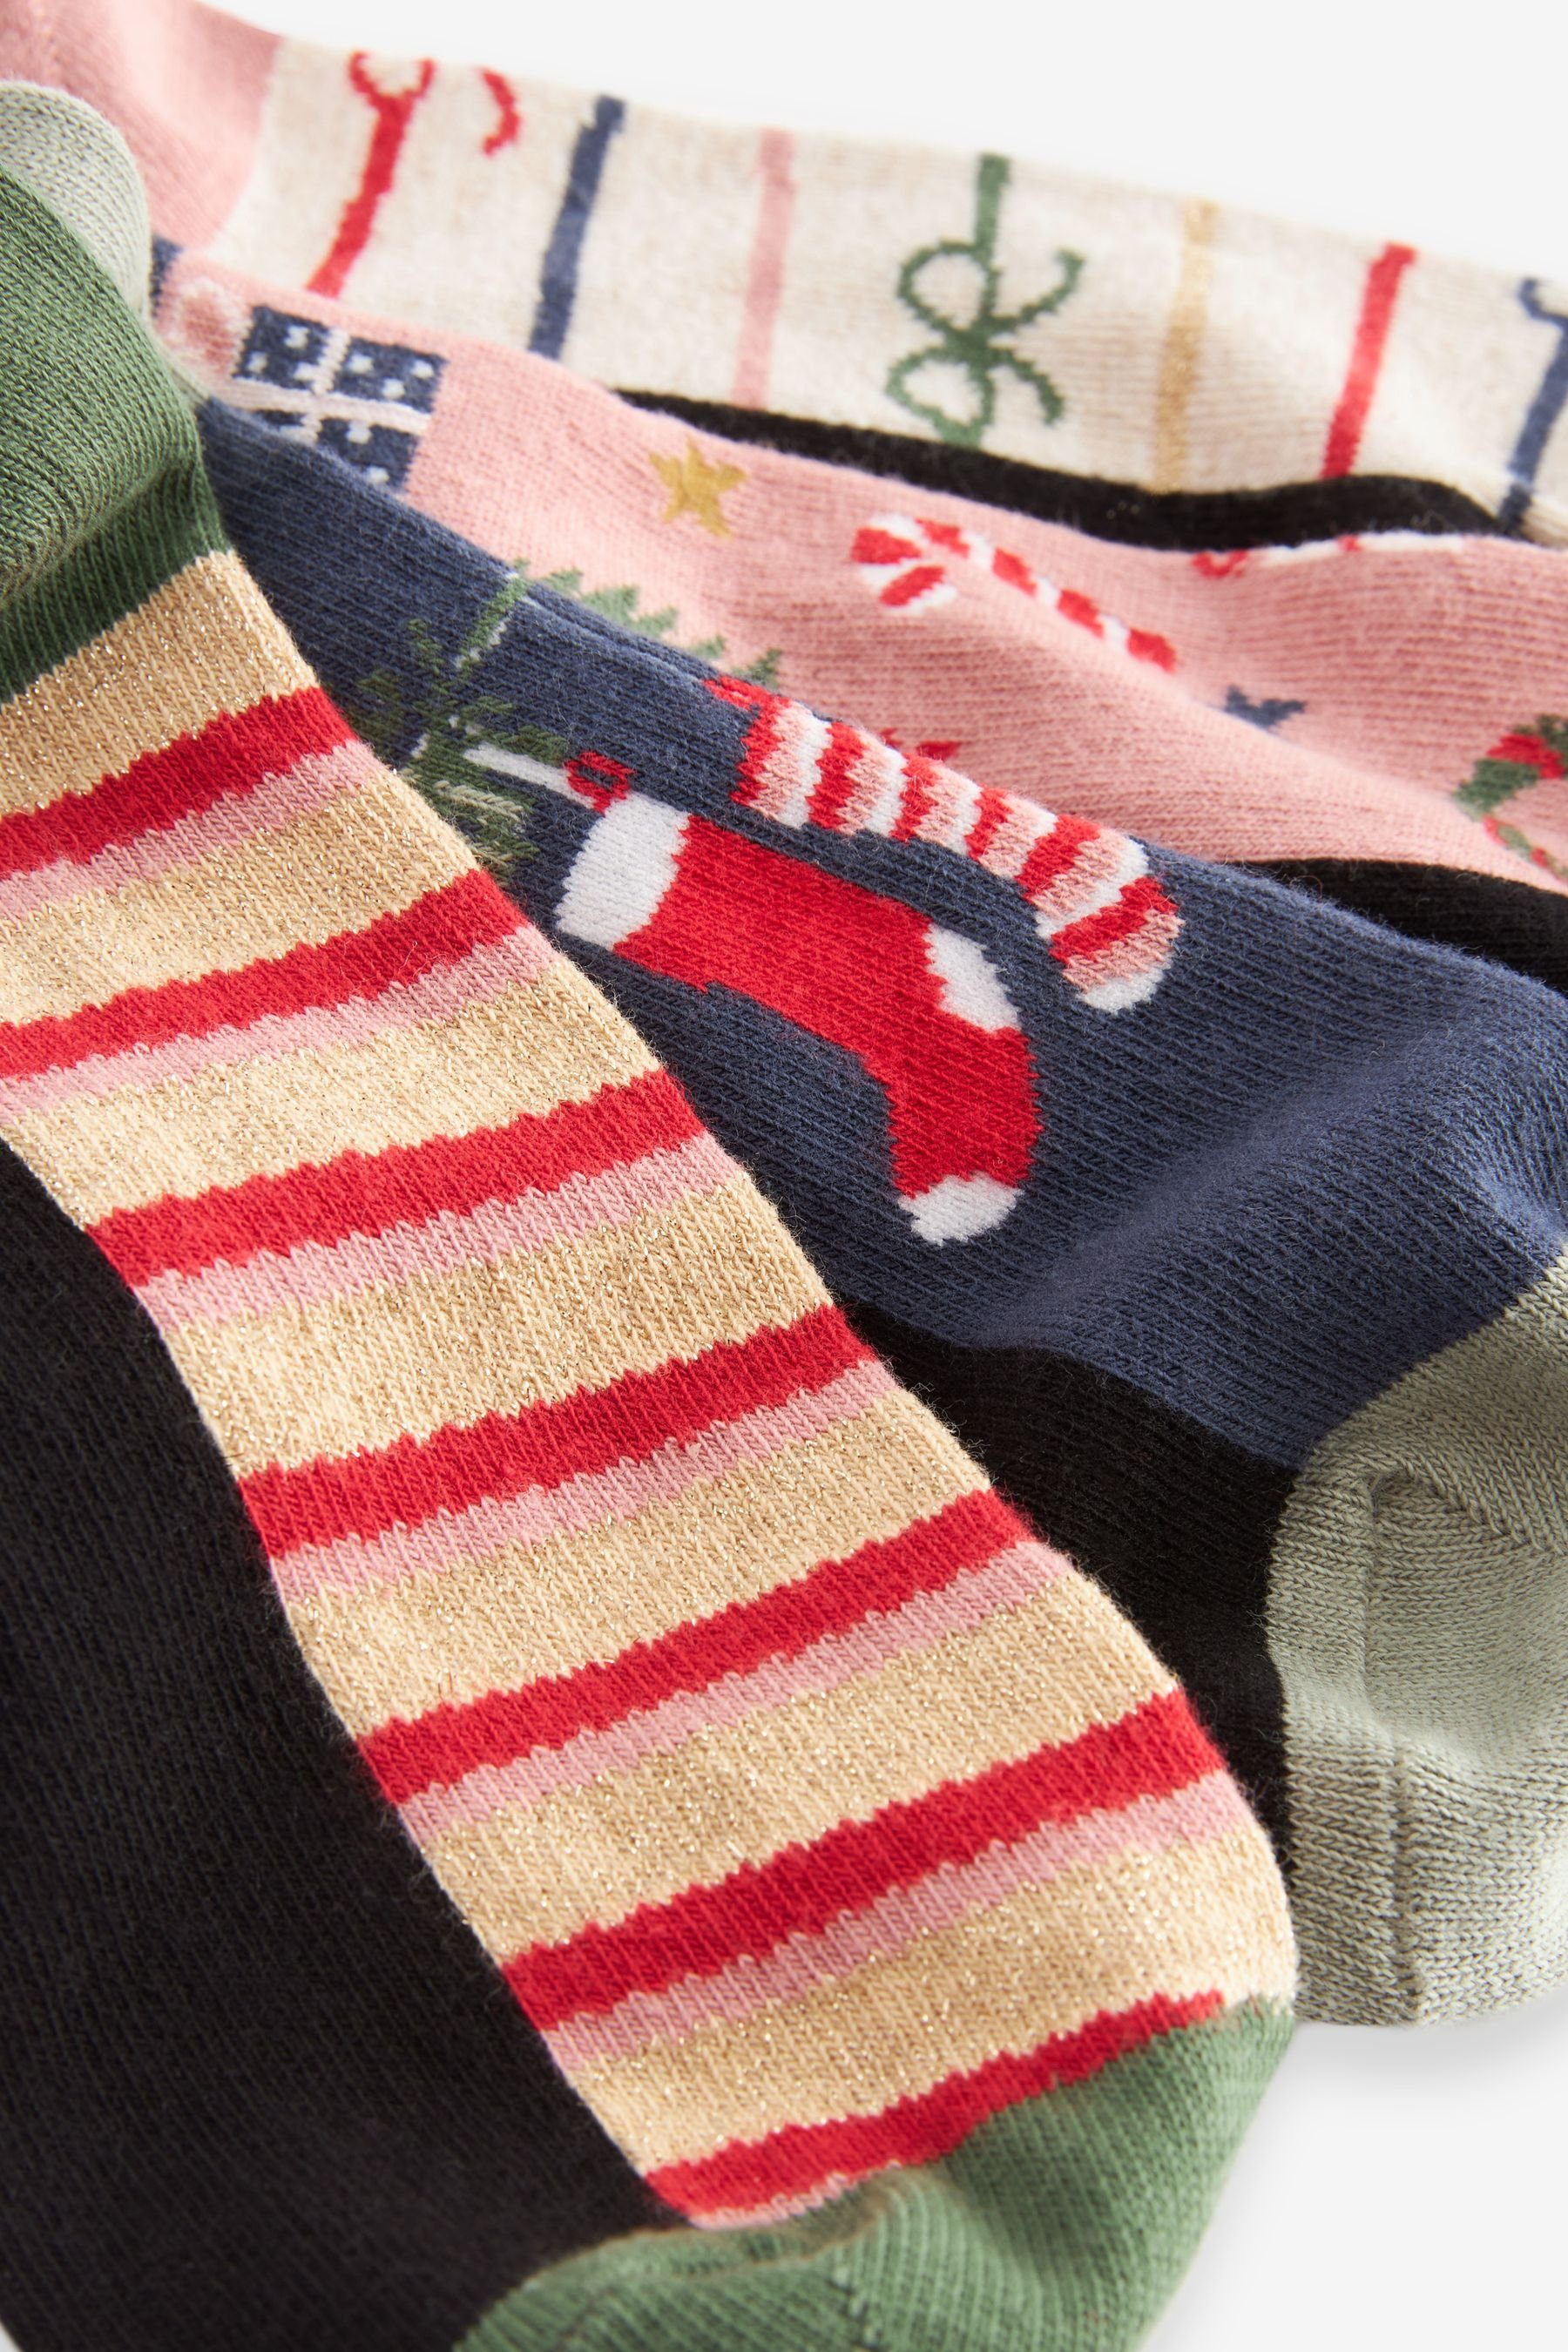 Kurzsocken Stockings mit Christmas (1-Paar) Fußbett, Söckchen 4er-Pack, Next schwarz